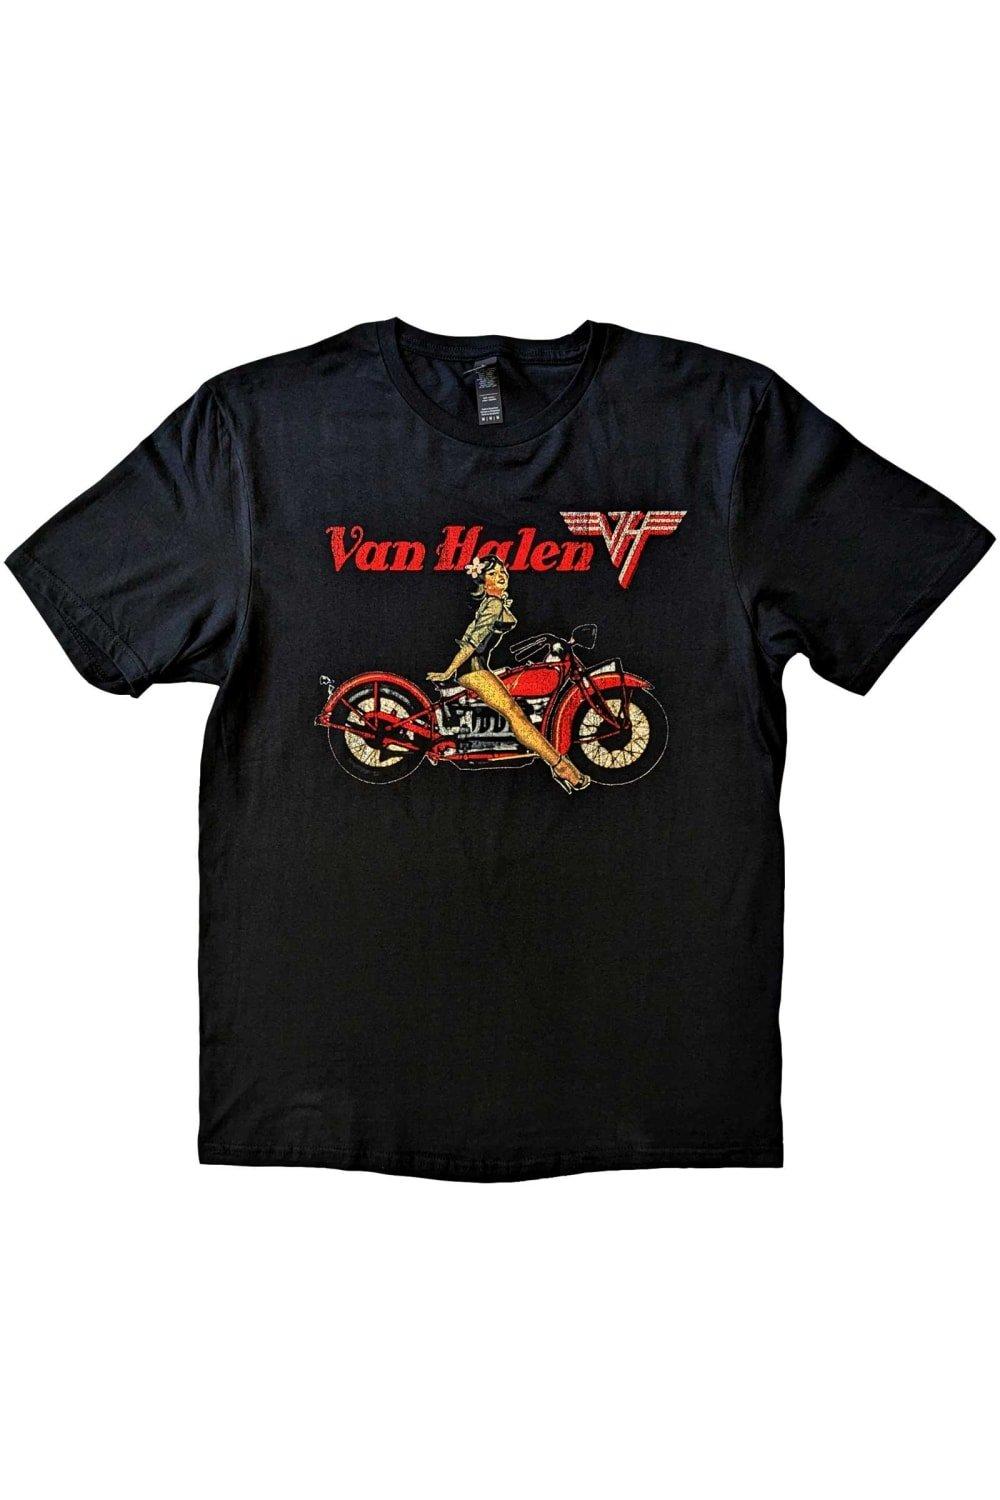 Хлопковая футболка Pinup Motorcycle Van Halen, черный бокс сет van halen box the collection van halen 1978 1984 черный винил